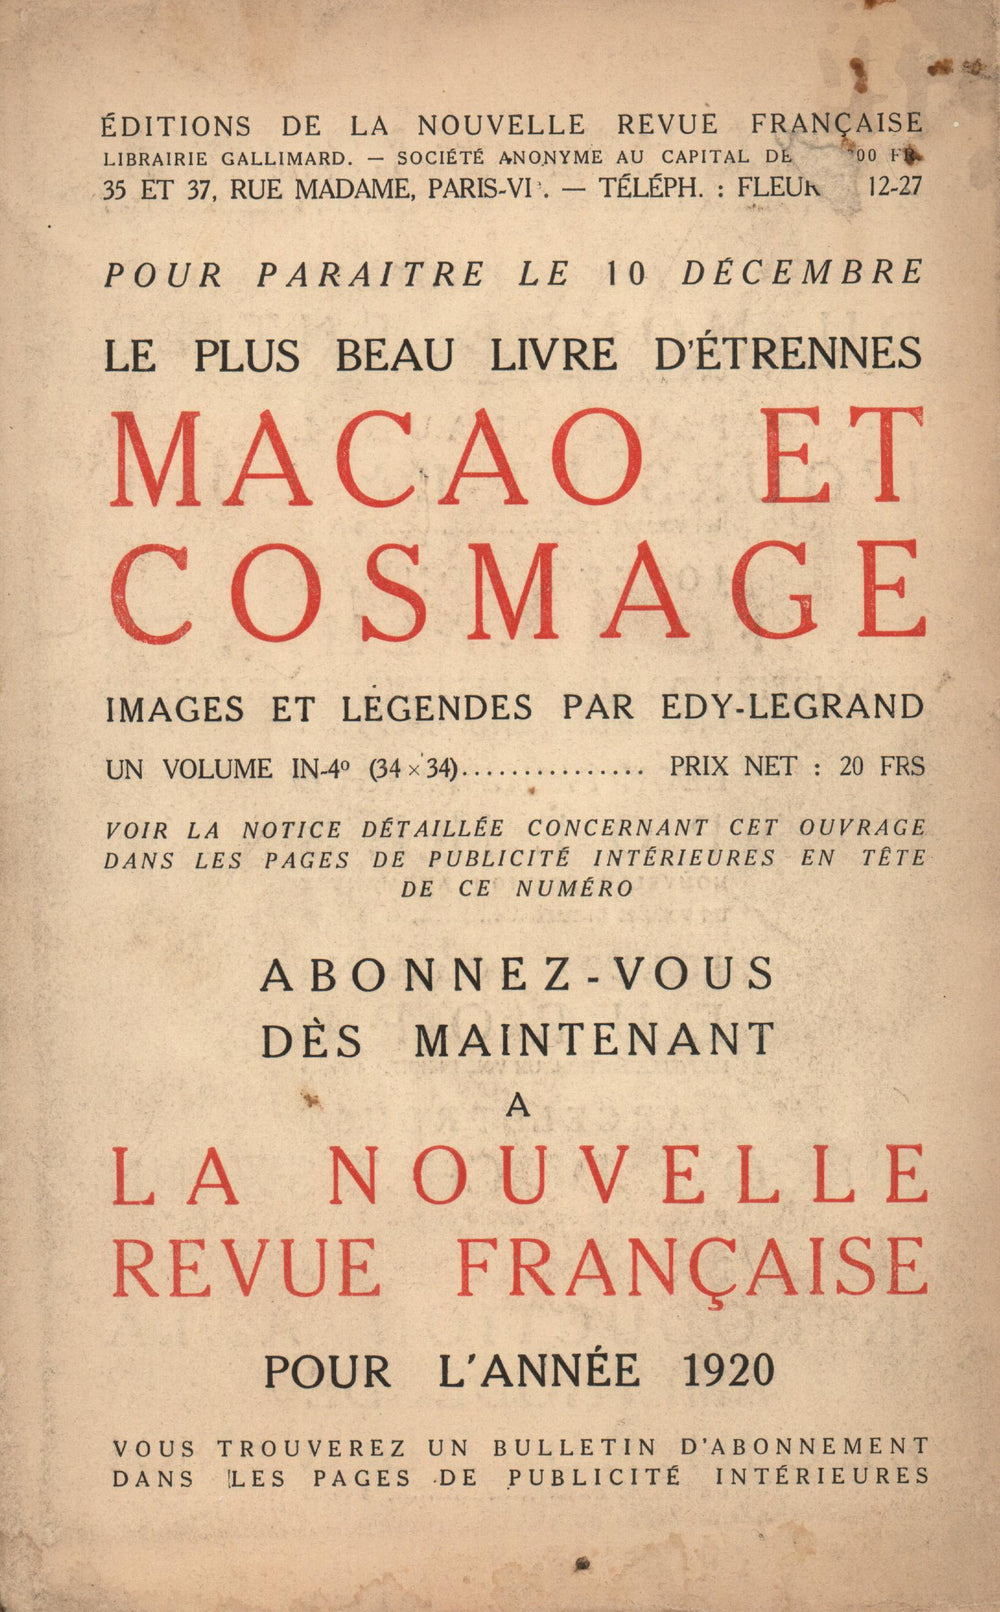 La Nouvelle Revue Française N' 75 (Décembre 1919)